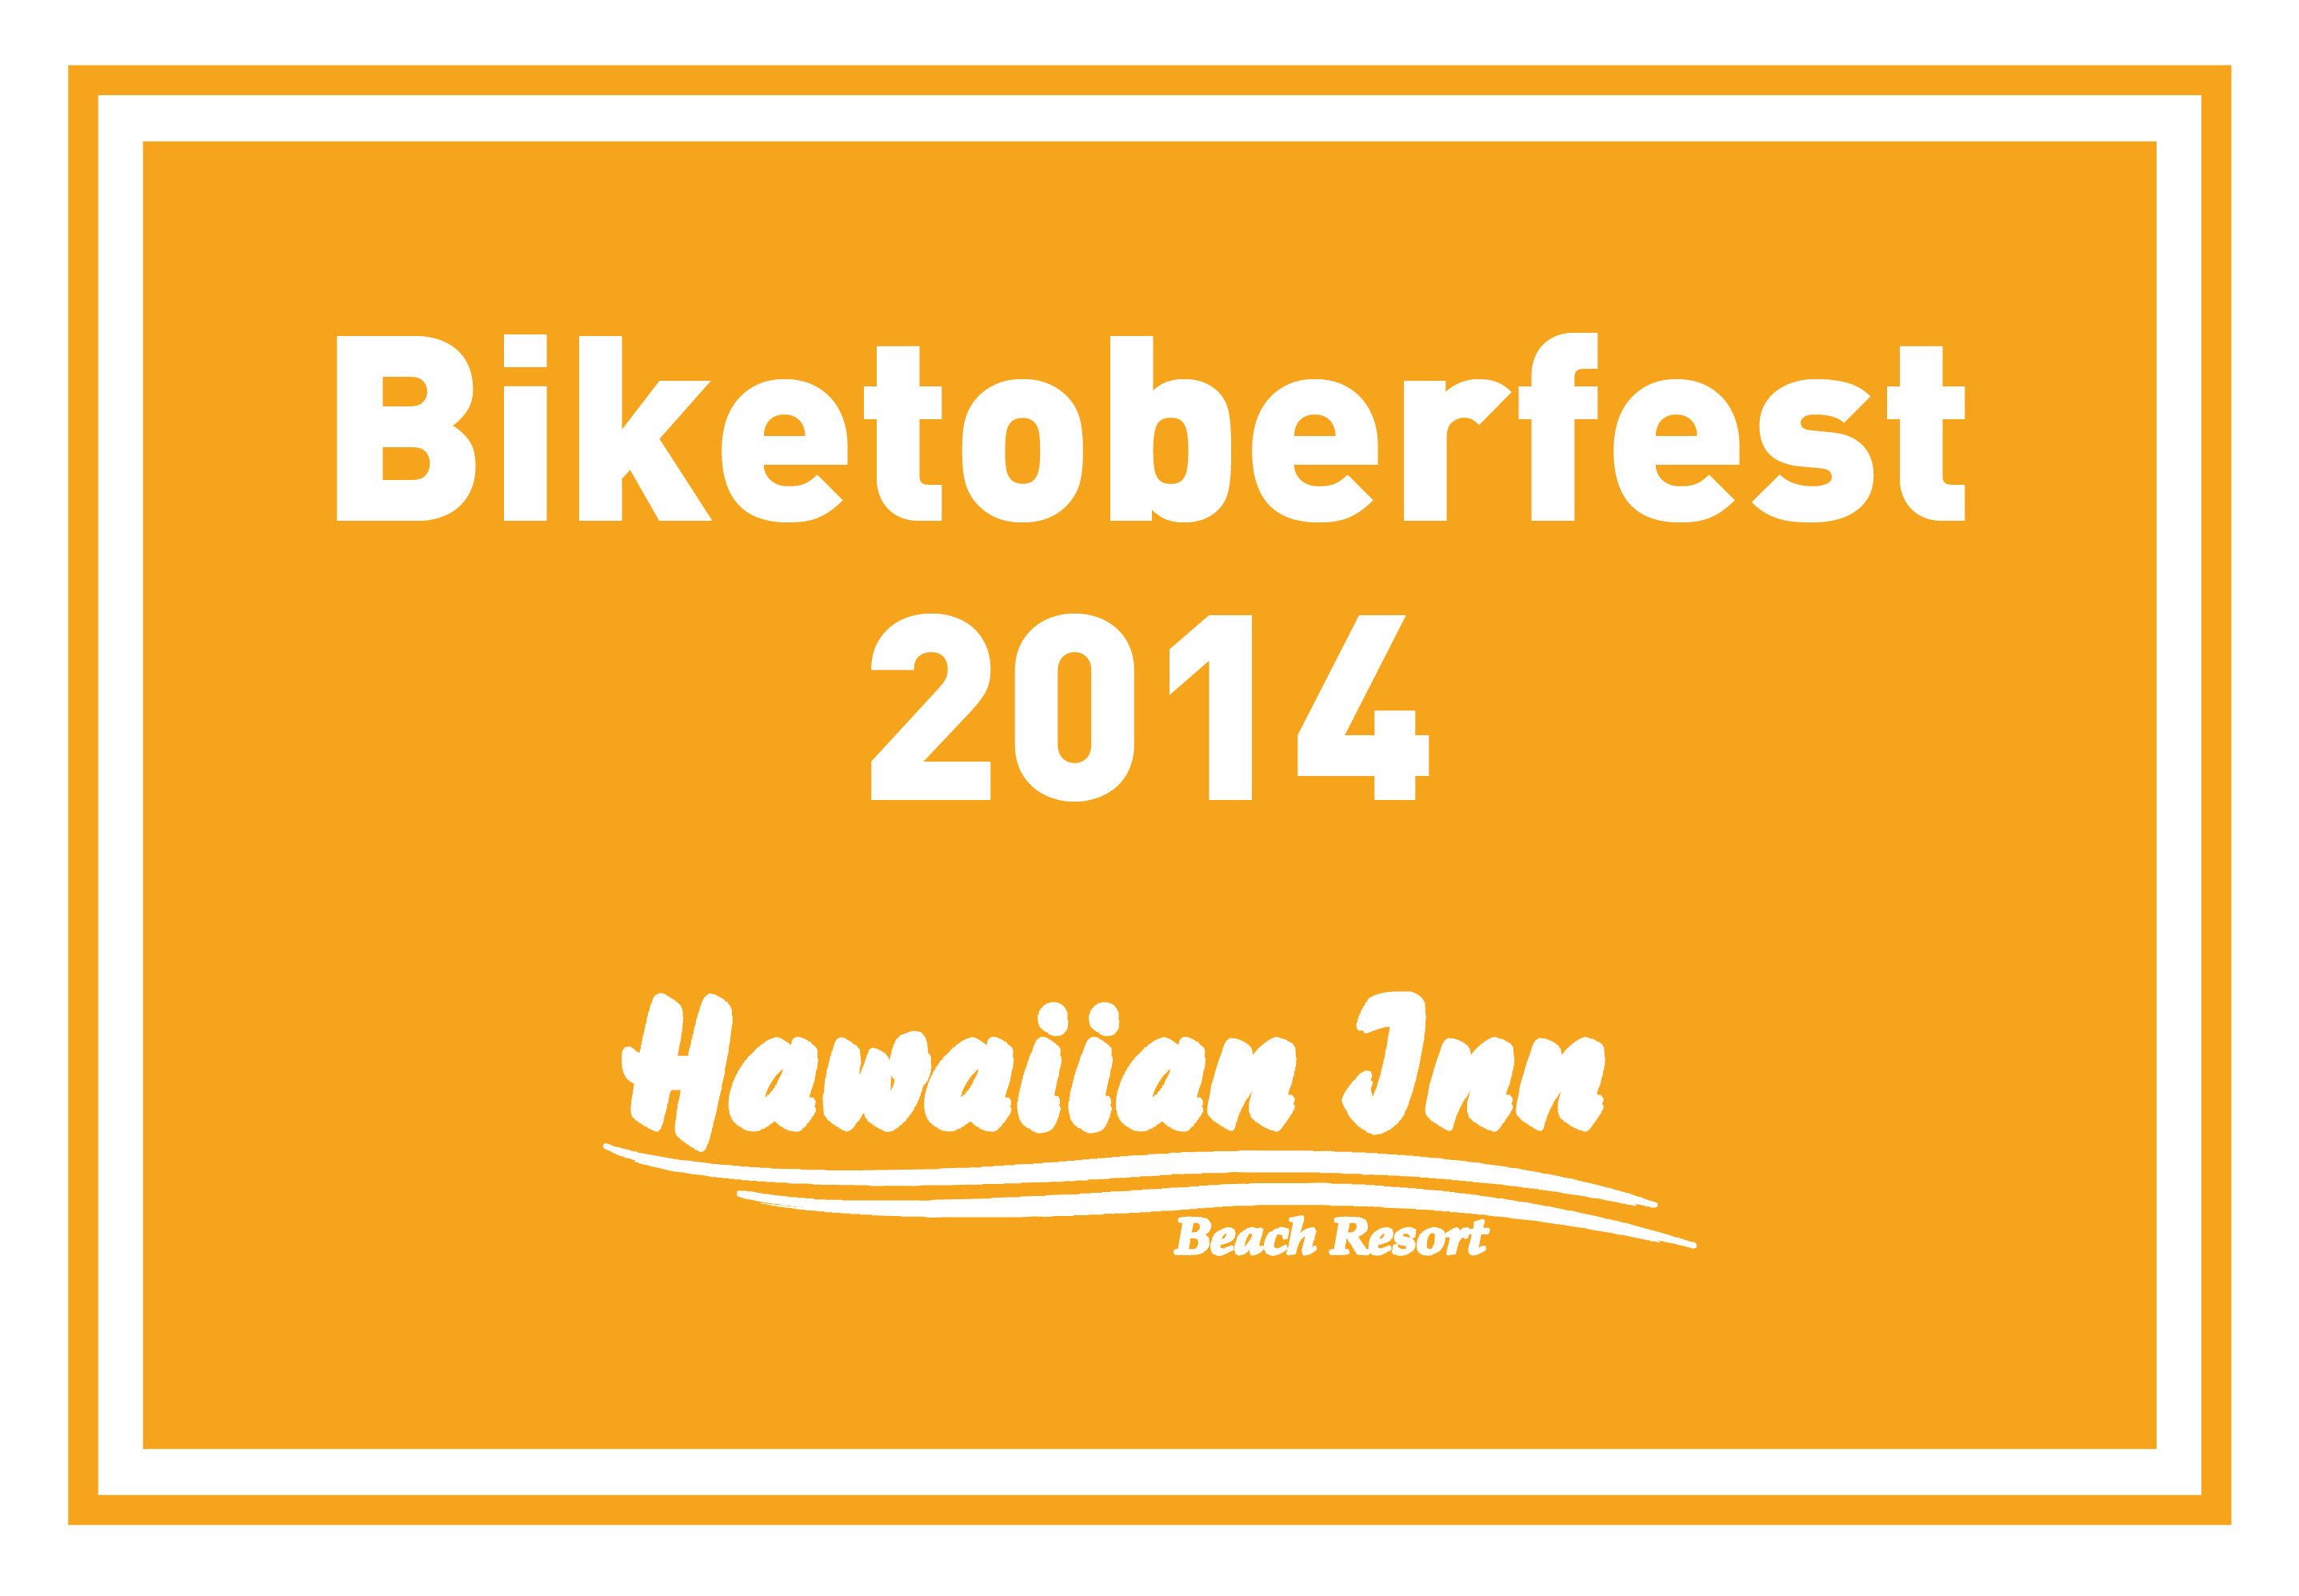 Biketoberfest 2014